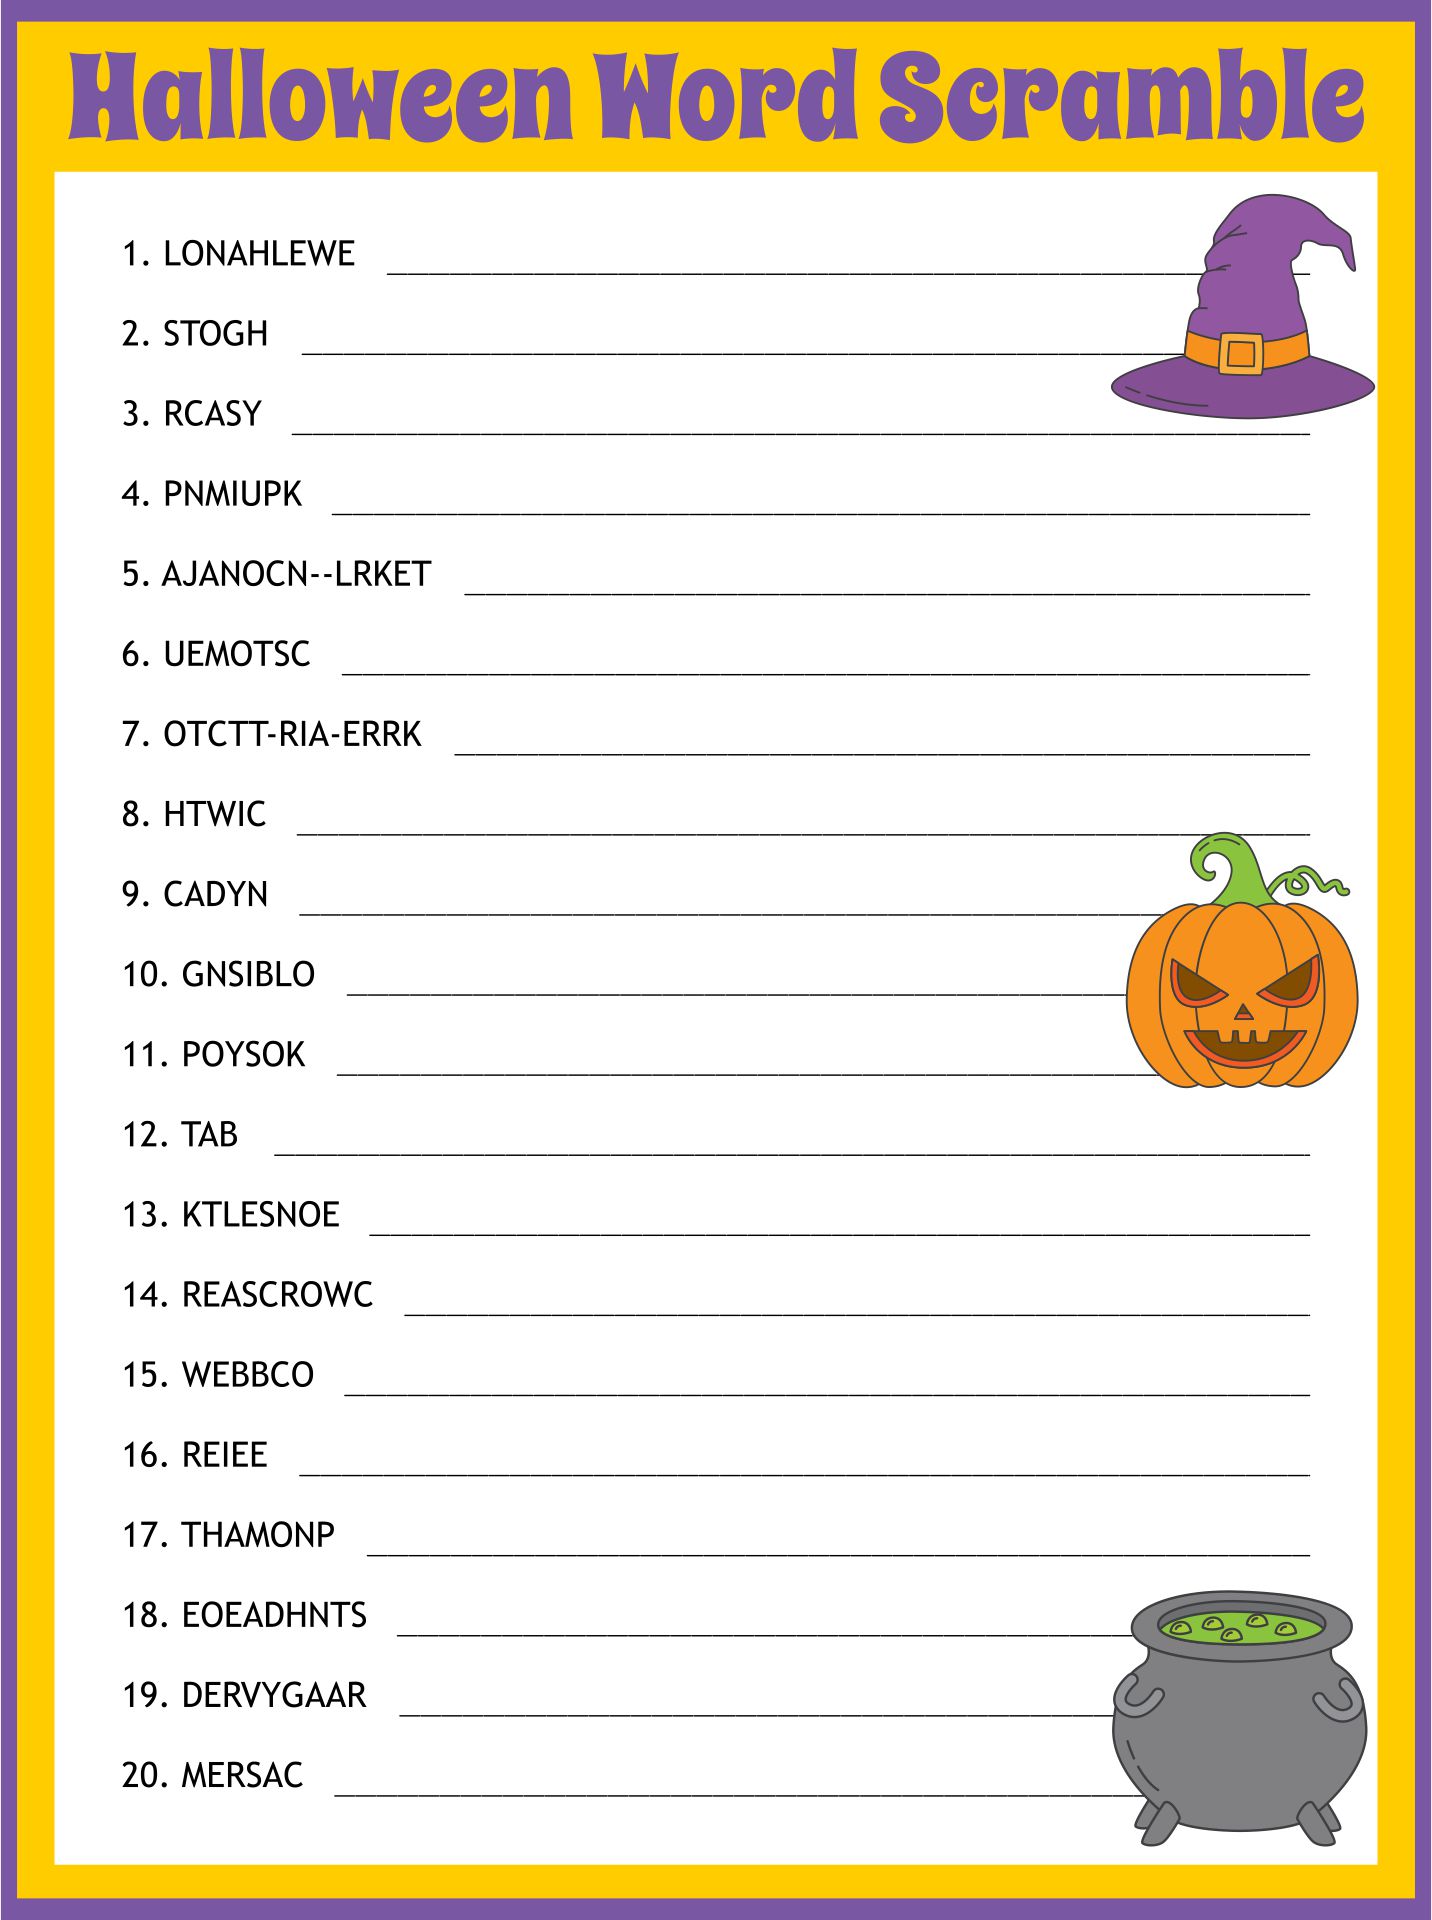 Halloween Word Games - 15 Free PDF Printables | Printablee